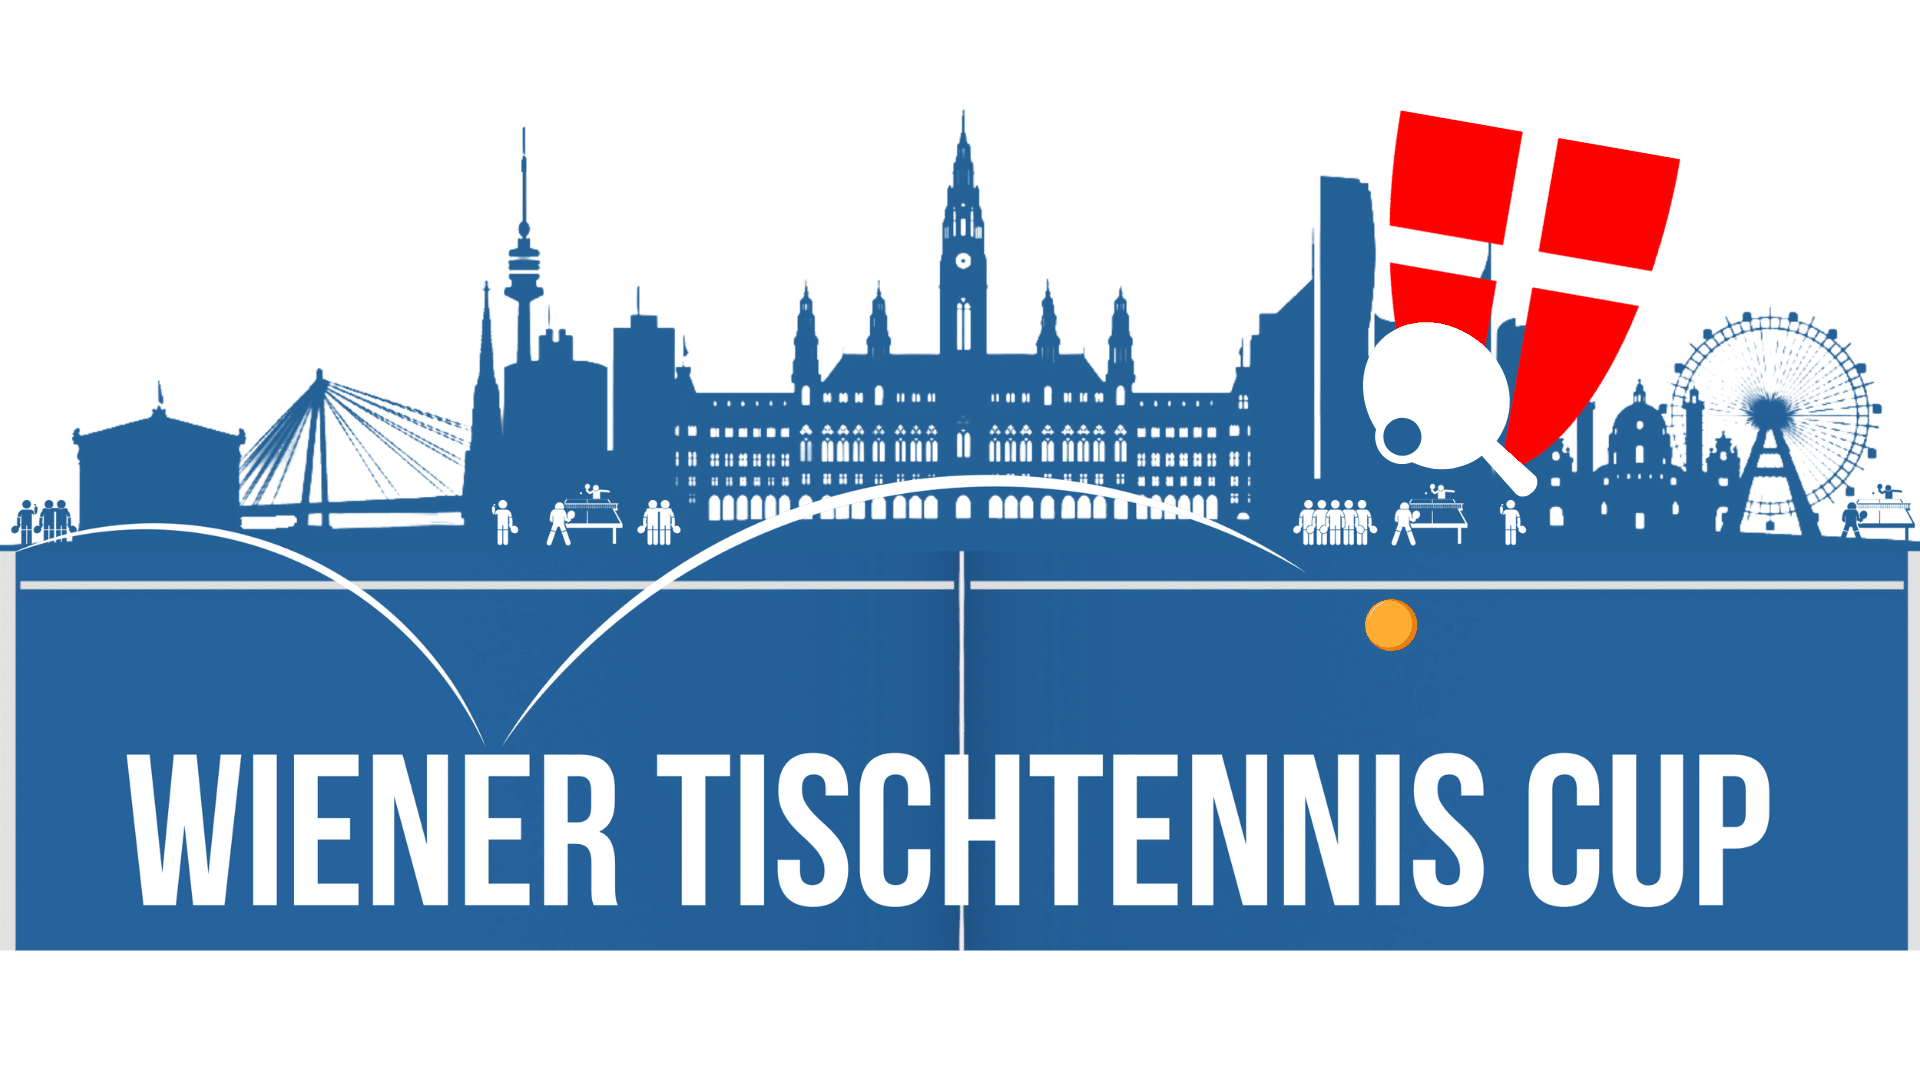 Der Wiener Tischtennis Cup soll die Wiener Tischtennis Community noch näher zusammen bringen. Tauche ein in spannende Matches in der Halle und im Park, und messe dein Können mit den Besten der Wiener Tischtennisszene.